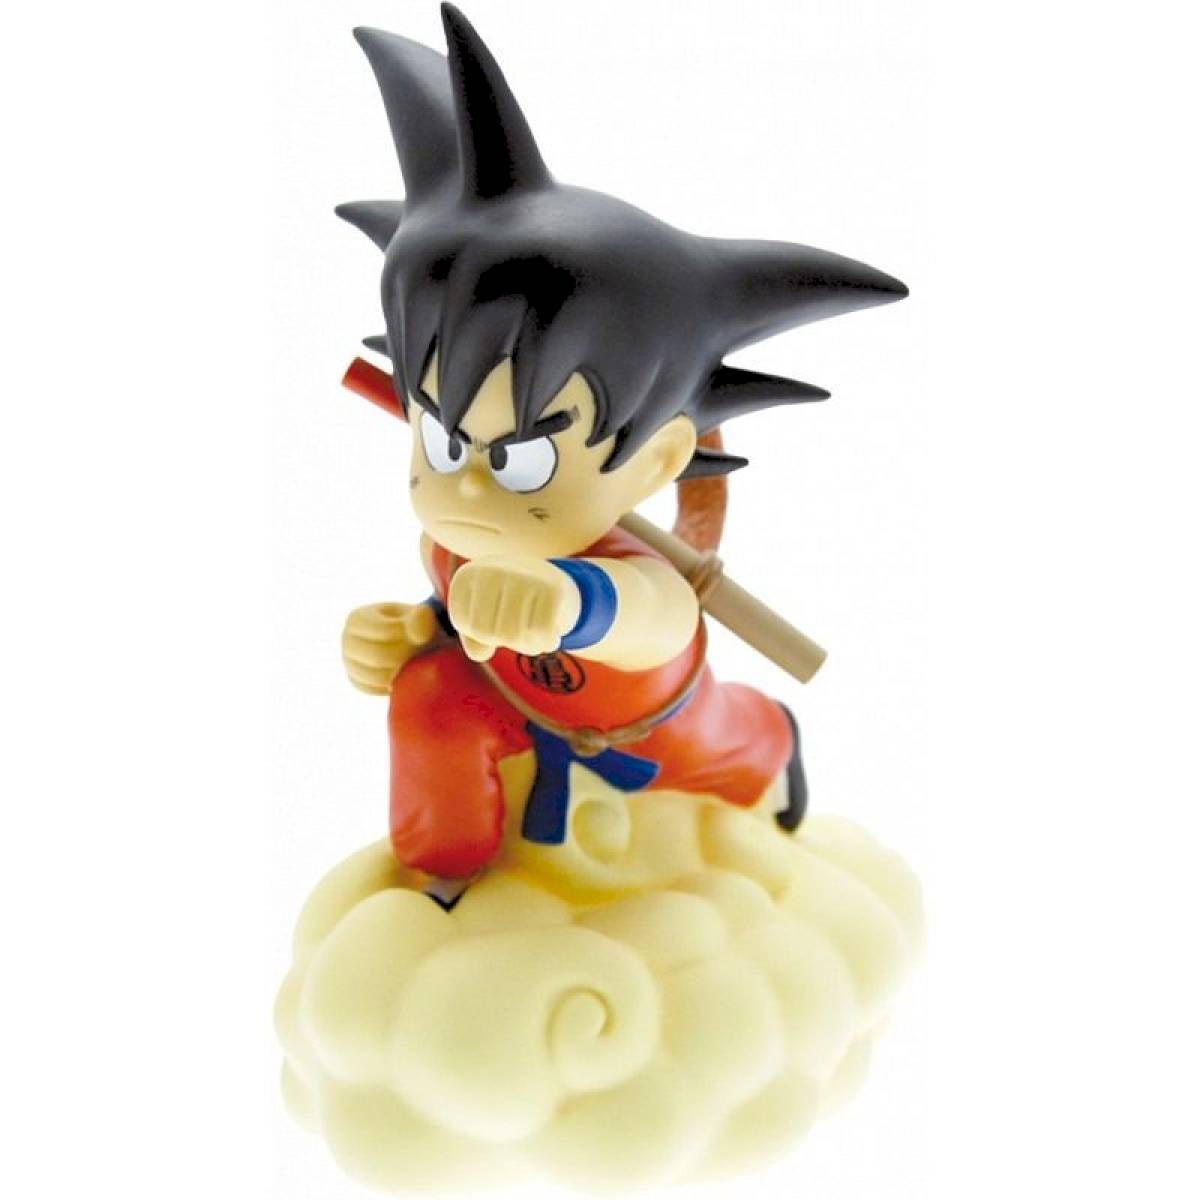 Tirelire Son Goku sur son nuage - Plastoy - Rêve de Lutin - Rêve